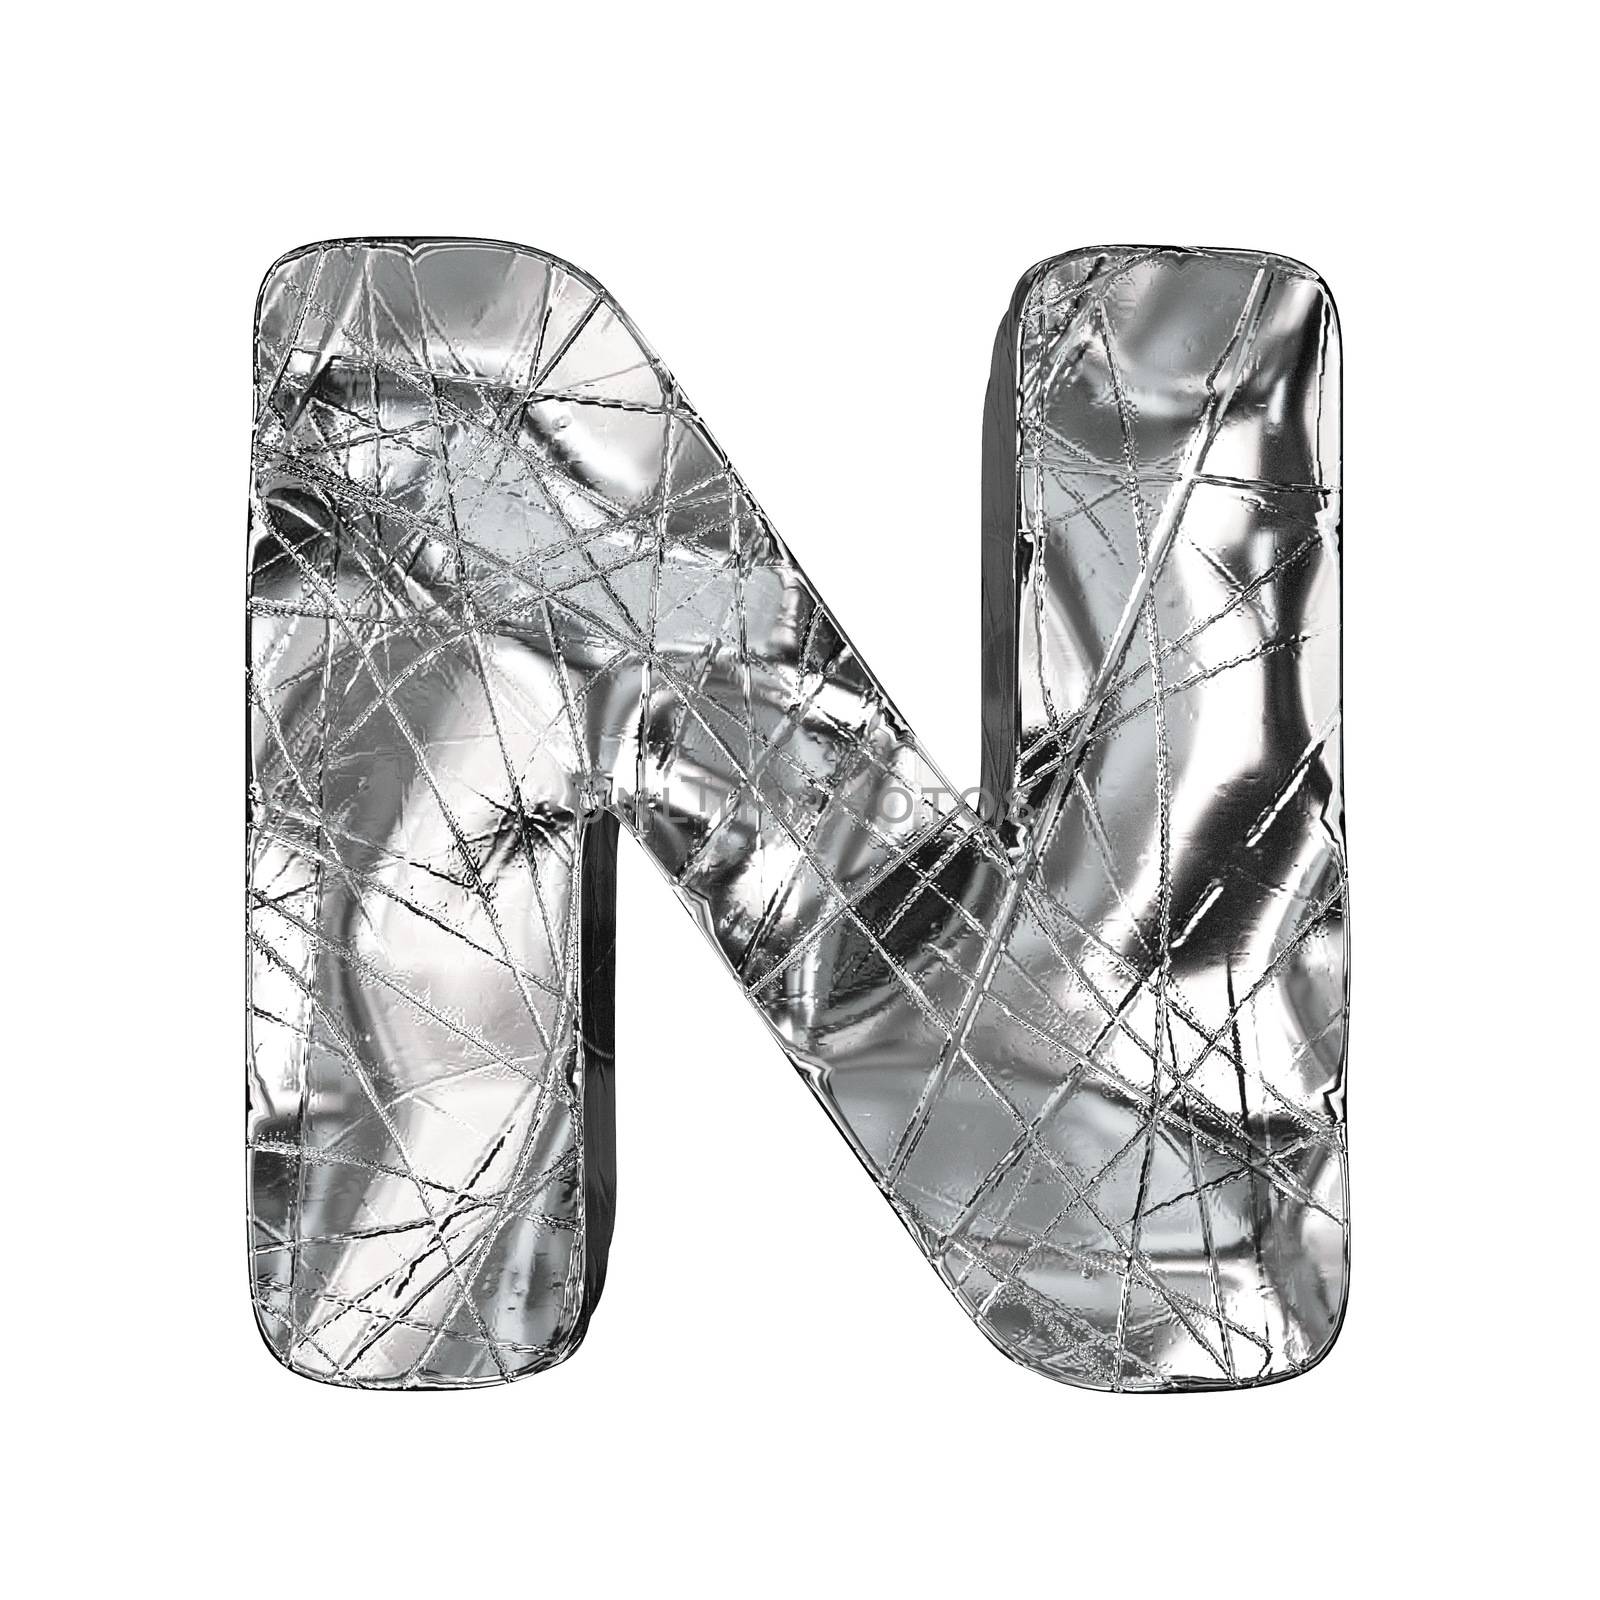 Grunge aluminium foil font letter N 3D render illustration isolated on white background